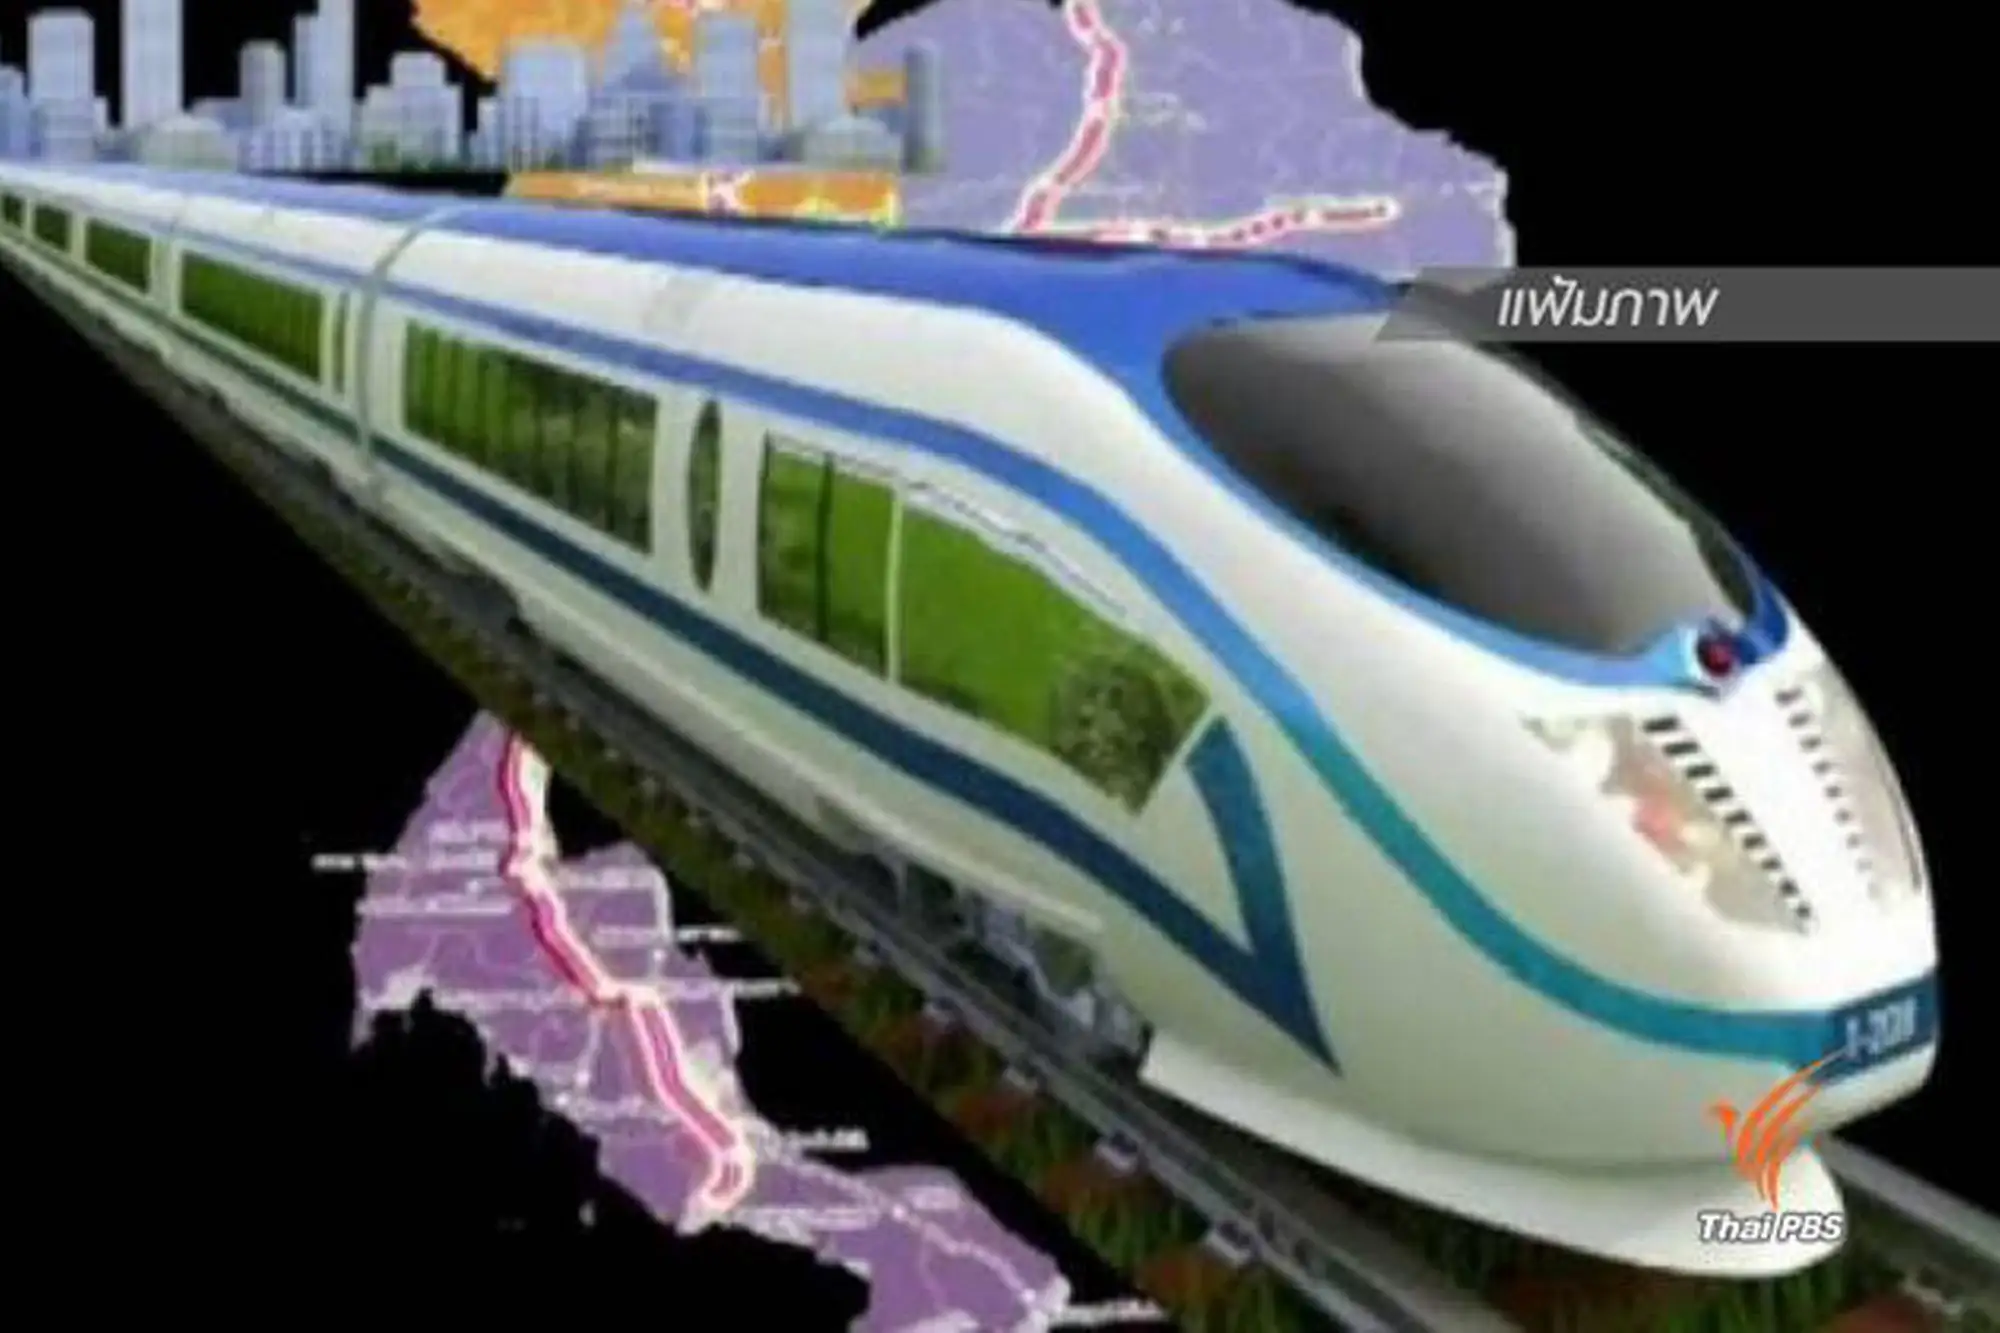 泰國交通部發表聲明澄清 仍在與日方協商泰國高鐵合作可行性 將堅持發展泰國高鐵